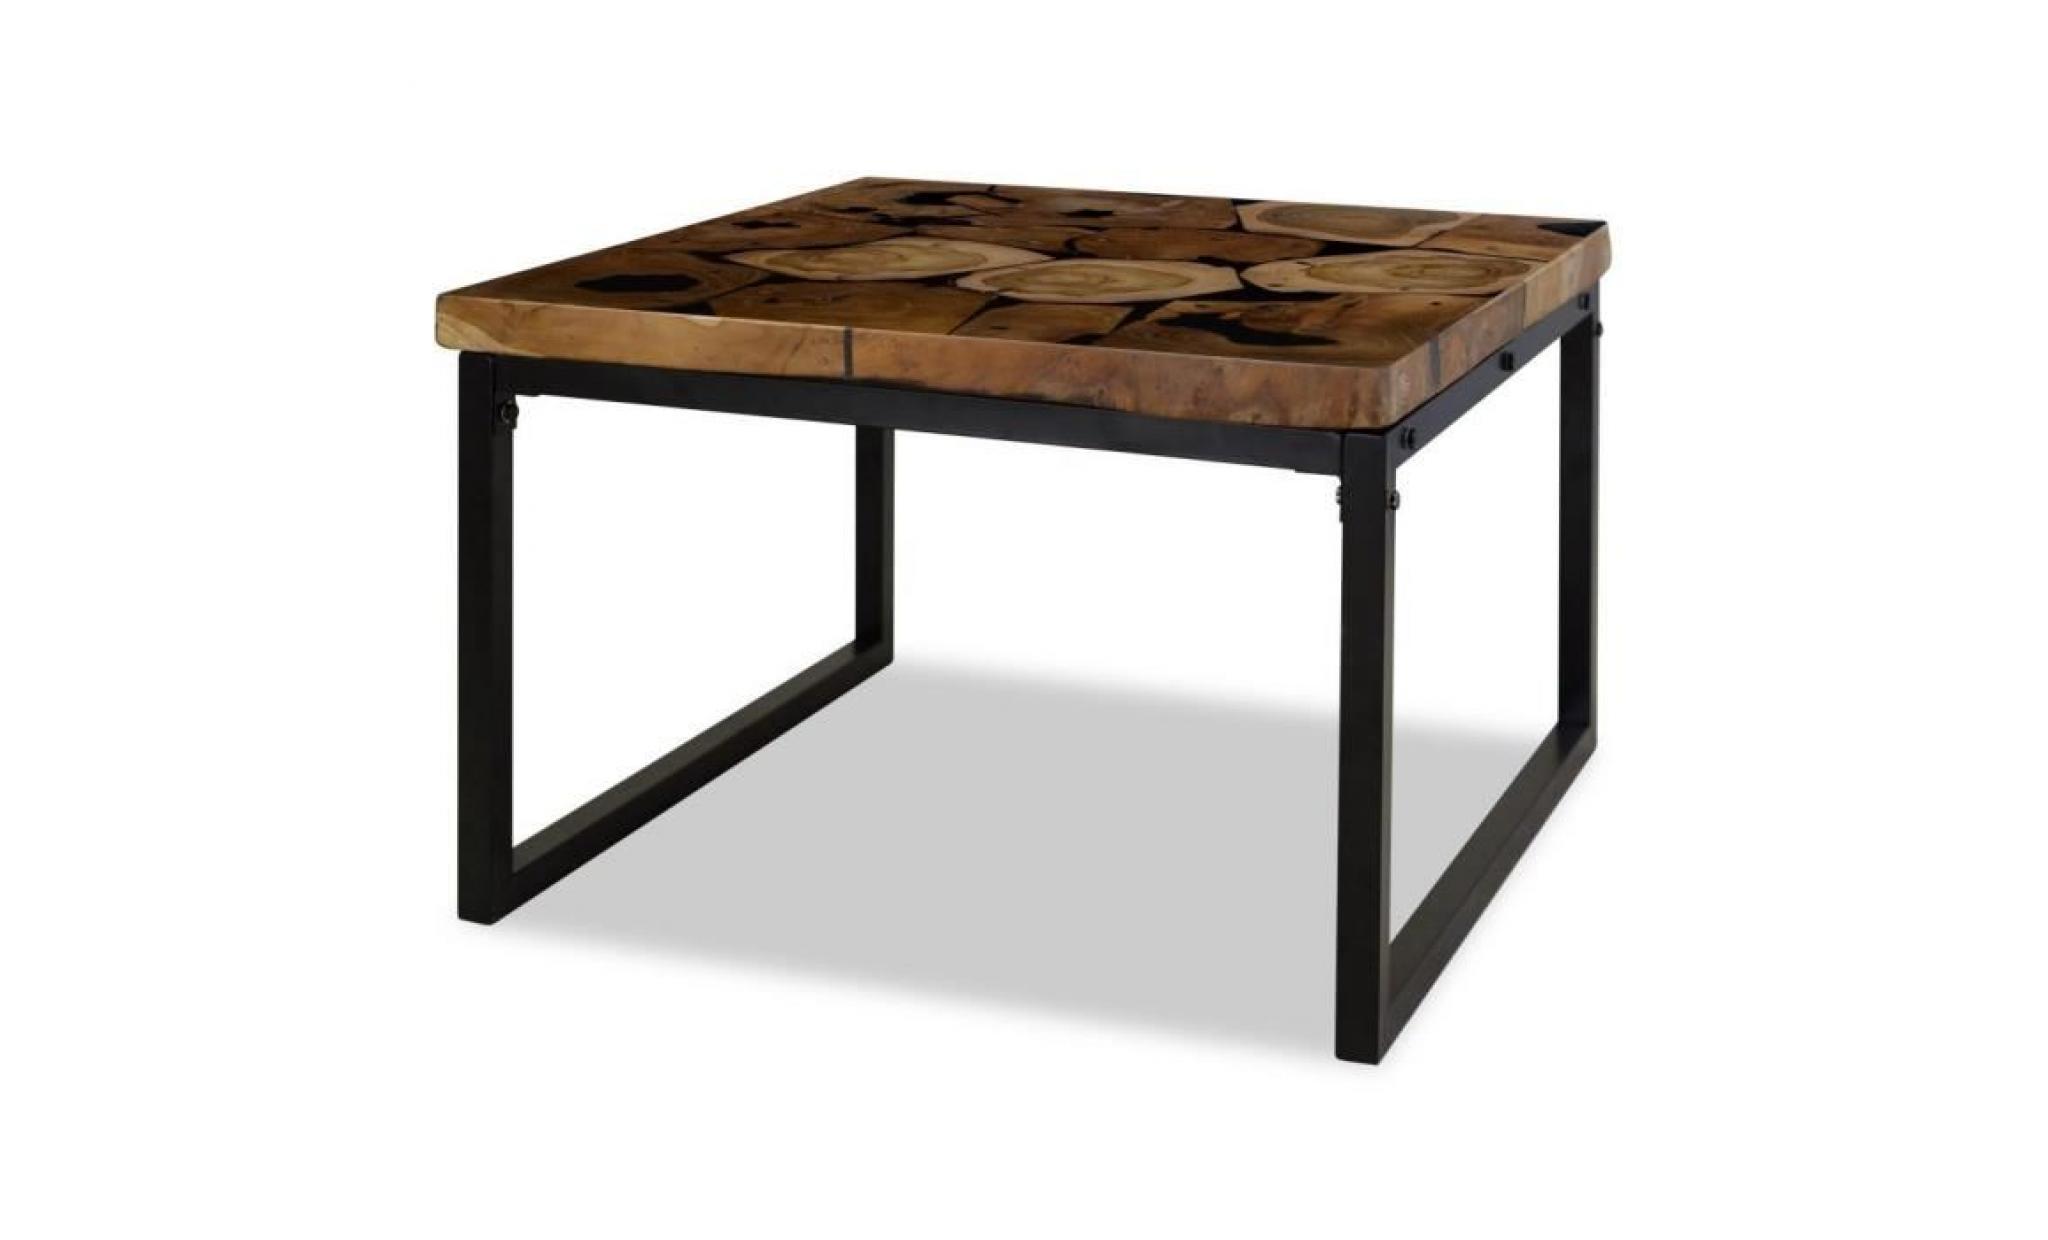 r44 cette table basse frappante, faite de teck veritable avec de la resine noire, degage un charme rustique et sera un e